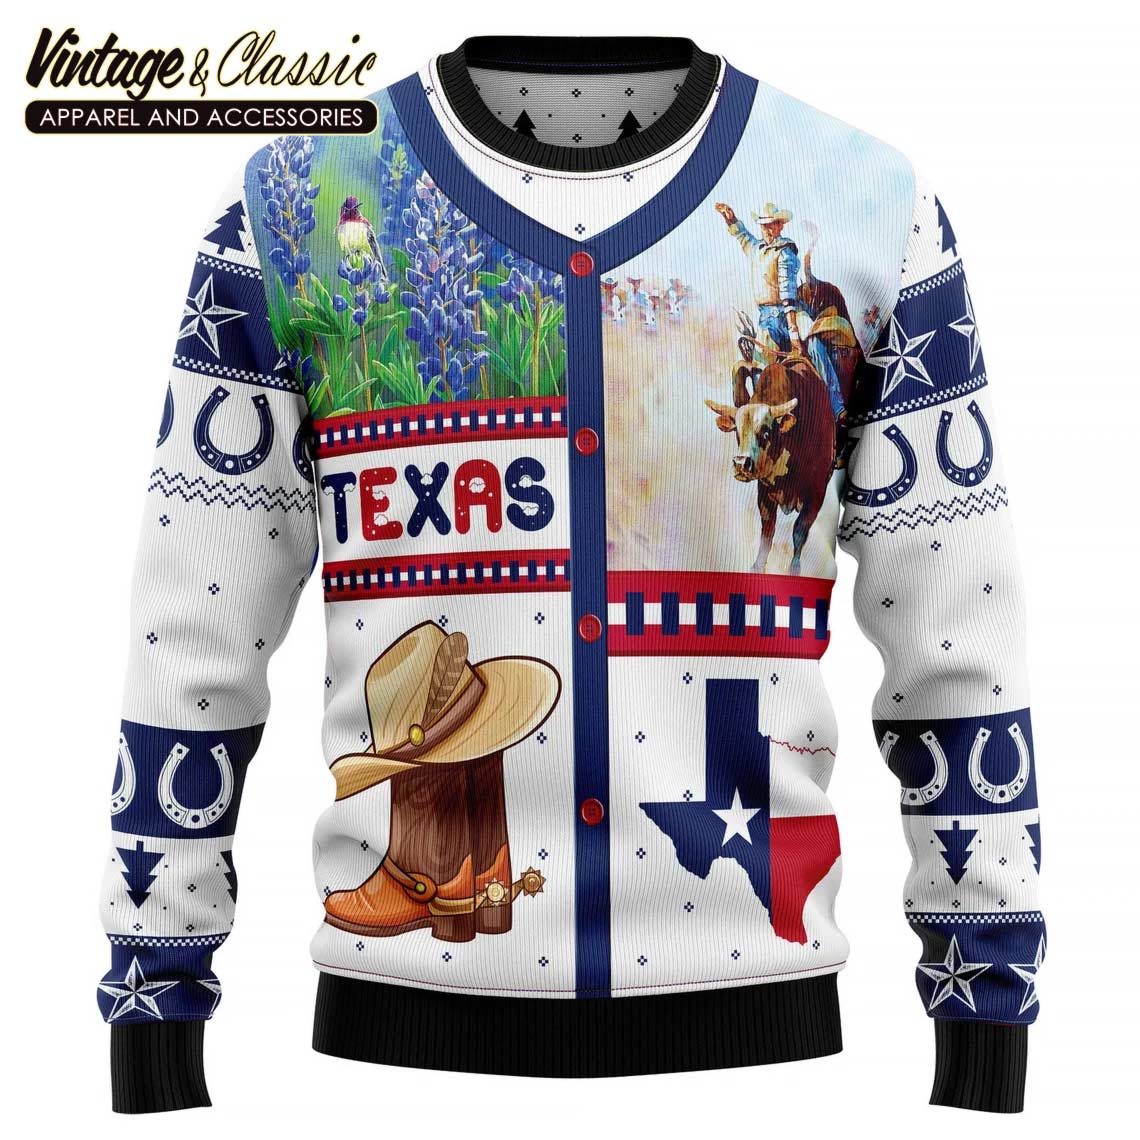 Texas Ugly Sweater Brand là một trong những thương hiệu quen thuộc của những ai yêu thích chiếc áo len xấu xí. Hãy xem ảnh để cảm nhận được tinh thần và phong cách riêng của các sản phẩm mang thương hiệu này.